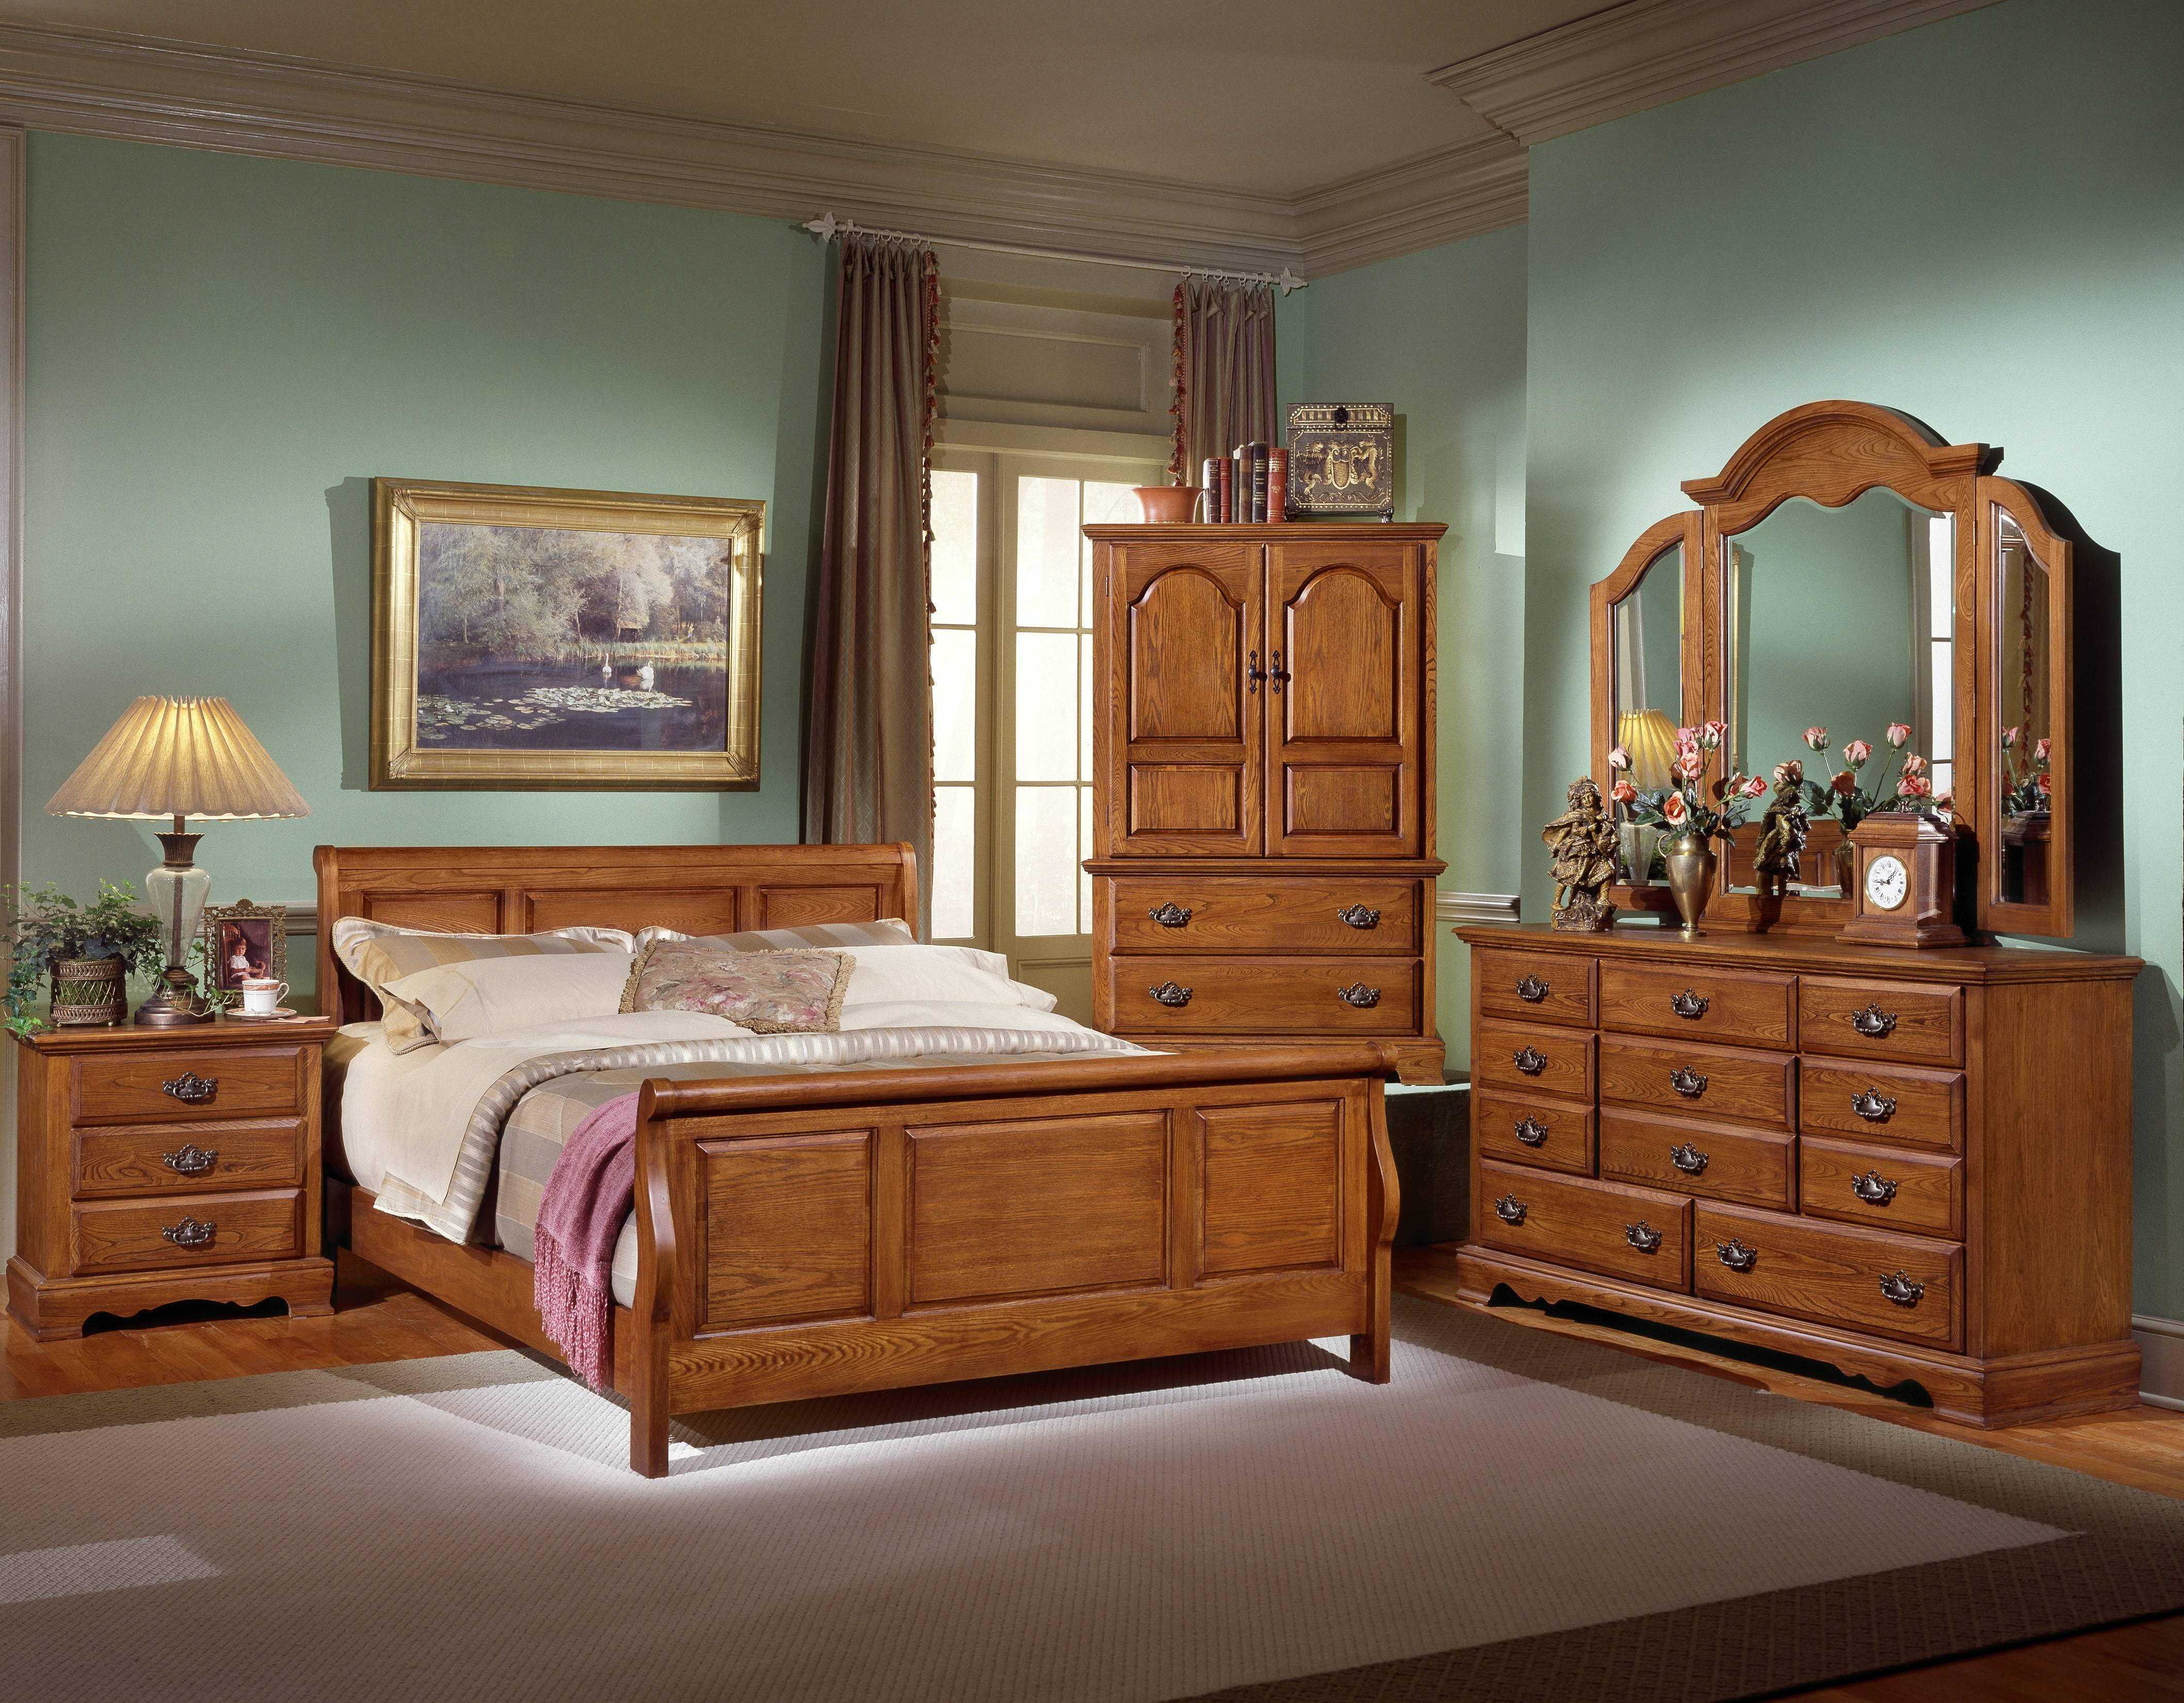 Спальня мебель дерево. Спальня из массива гевеи 4934. Румынская мебель Легаси ирландский стиль Кантри. Красивая деревянная мебель. Спальня из дерева.